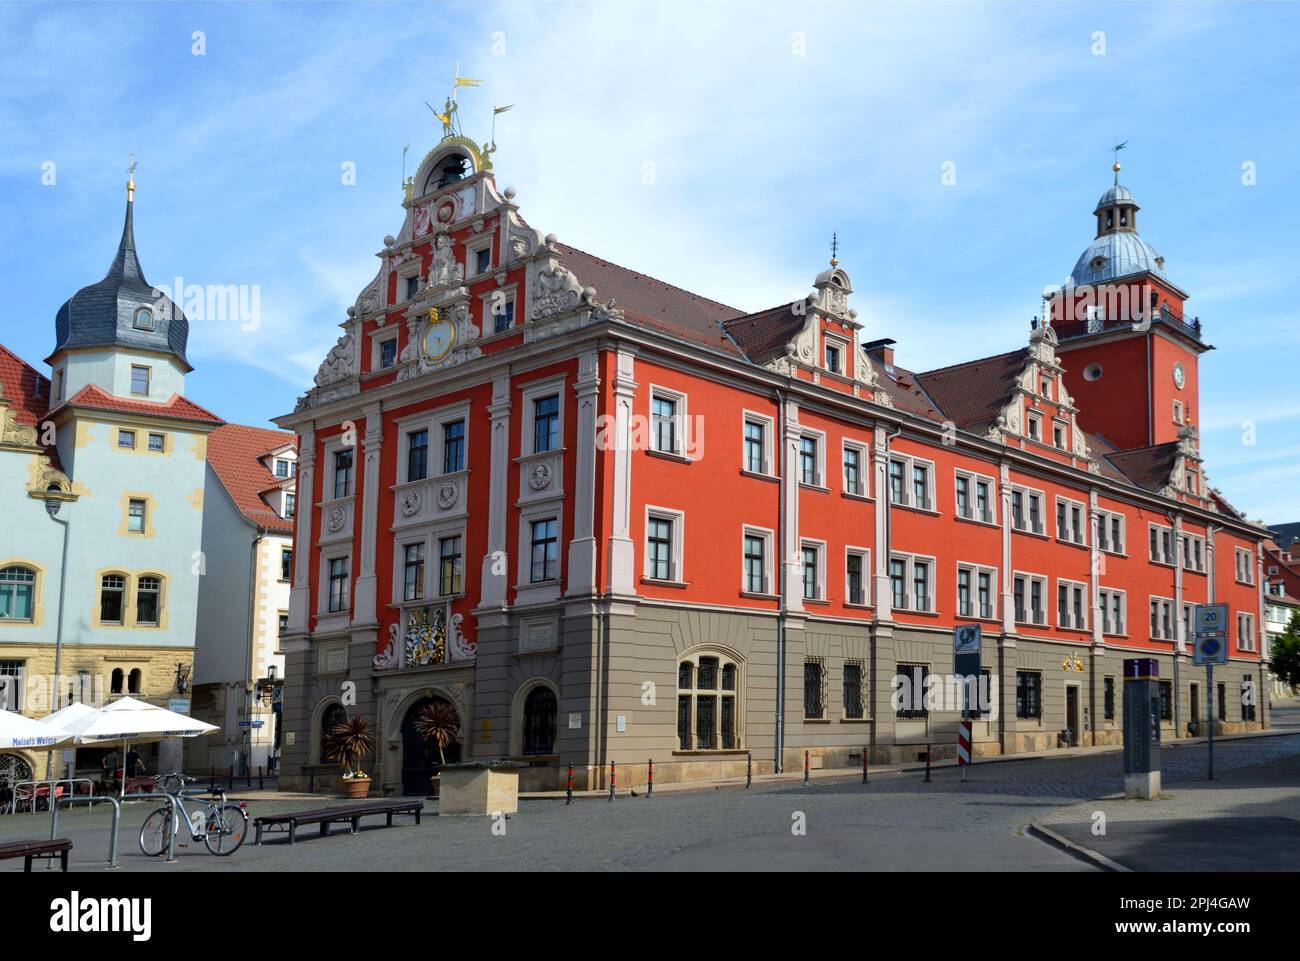 Germania, Turingia, Gotha: Originariamente costruito come bourse tra il 1566 e il 1574, questo bell'edificio rinascimentale è stato utilizzato come Municipio (Rathau Foto Stock